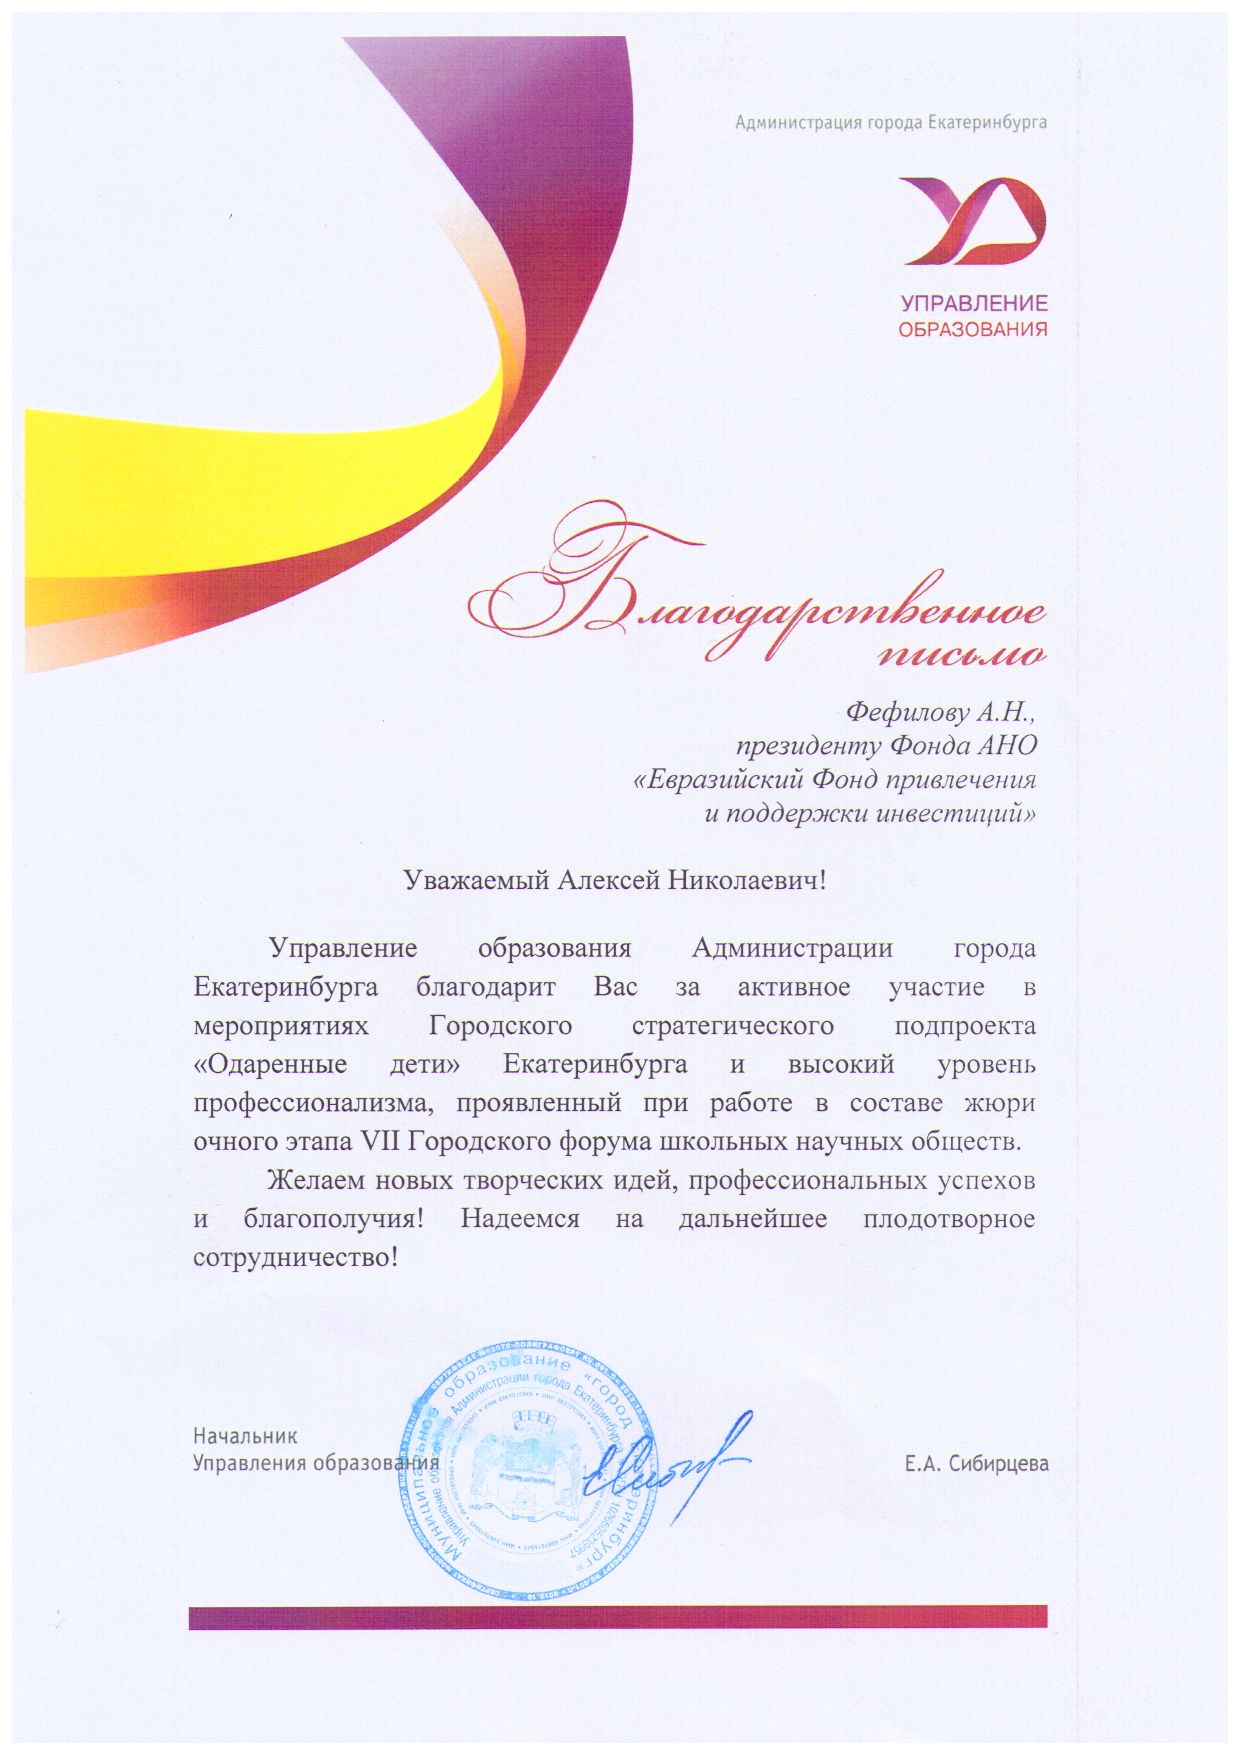 Благодарность Управления образования Екатеринбурга